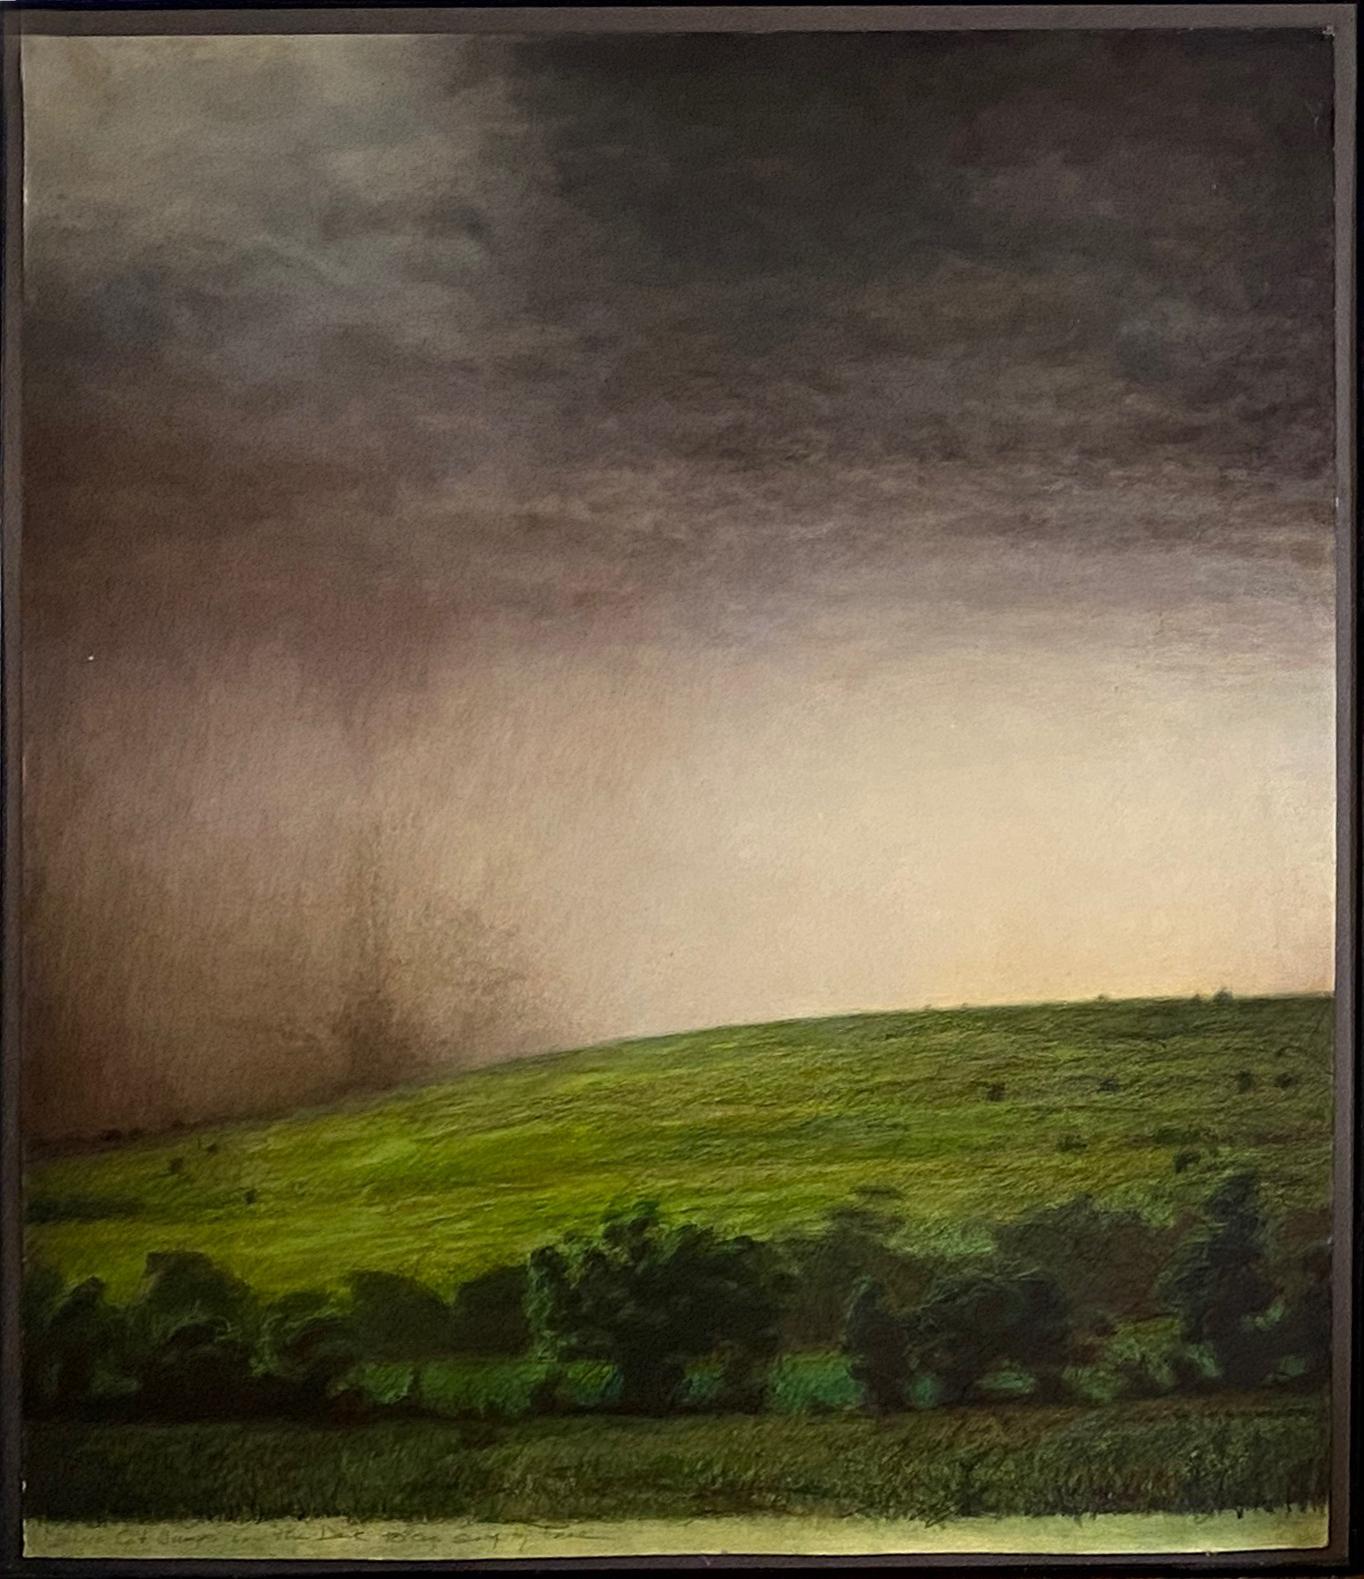 Cette peinture de paysage encadrée de Mark Gilmore (42" x 34") présente une scène rurale d'un champ à flanc de colline et une tornade naissante cachée derrière une tempête de pluie en mouvement et un rayon de soleil dans le champ. Le travail de